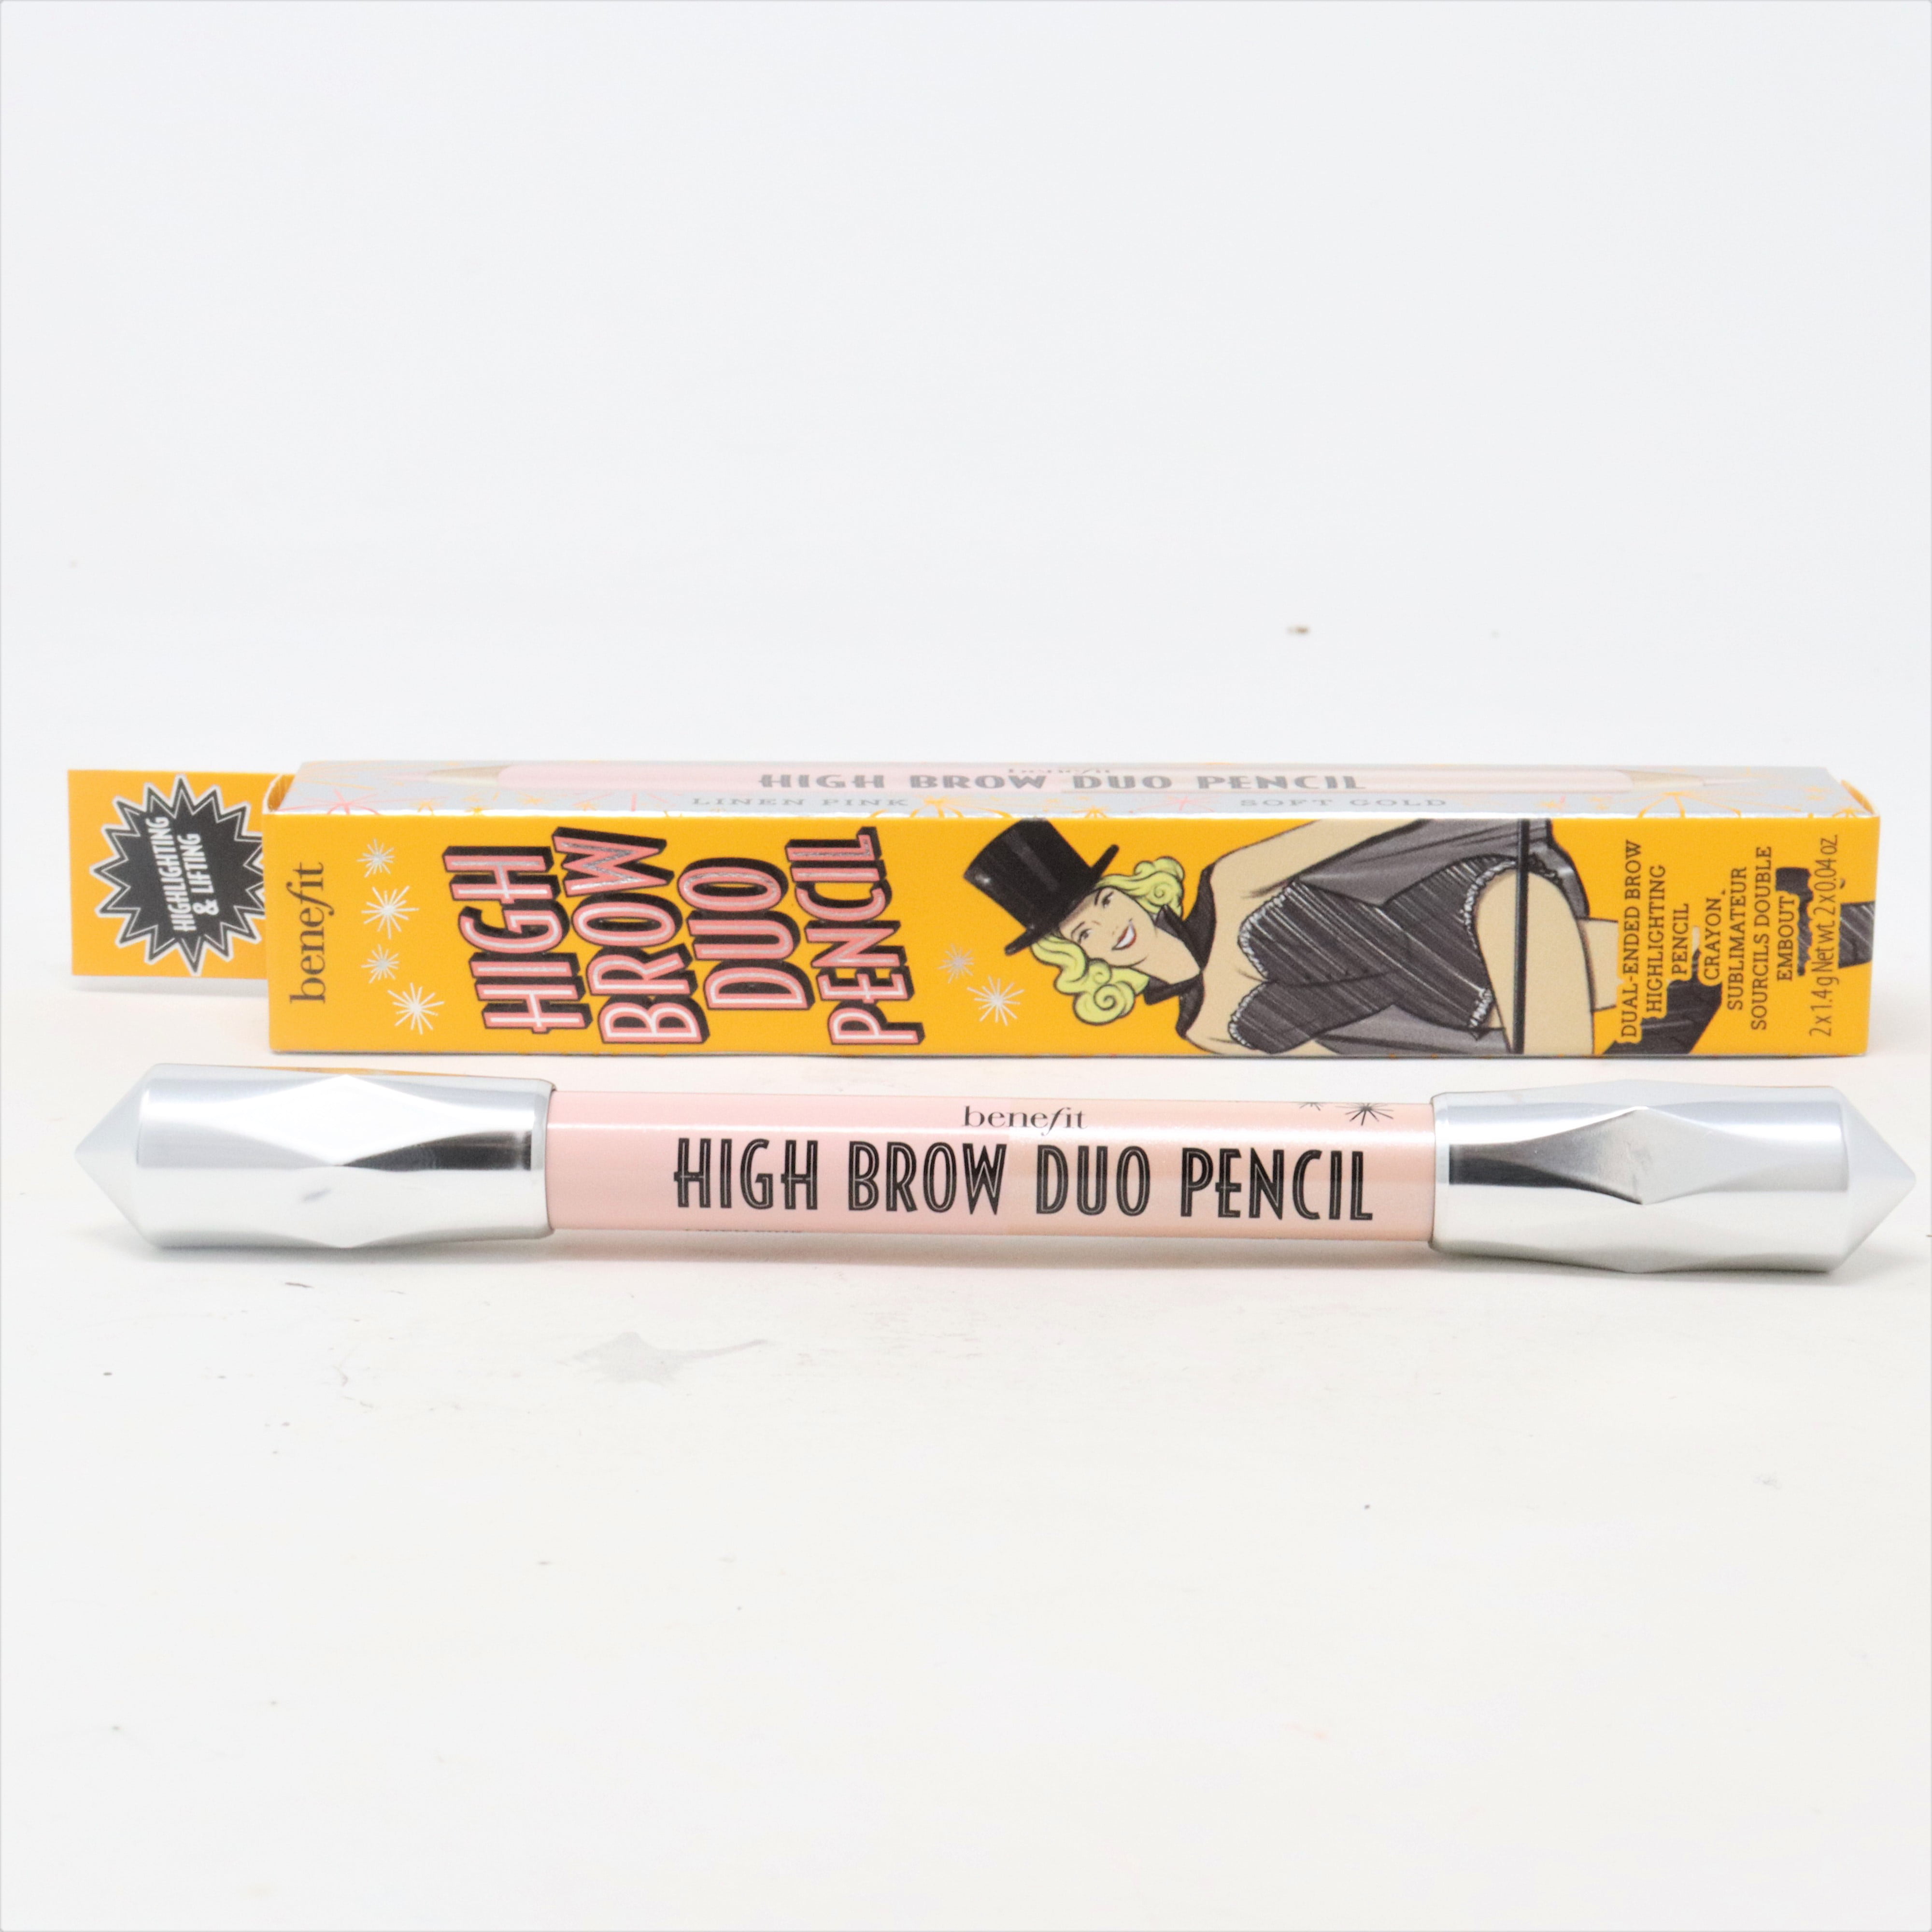 chanel brow powder duo + liquid eyebrow pen